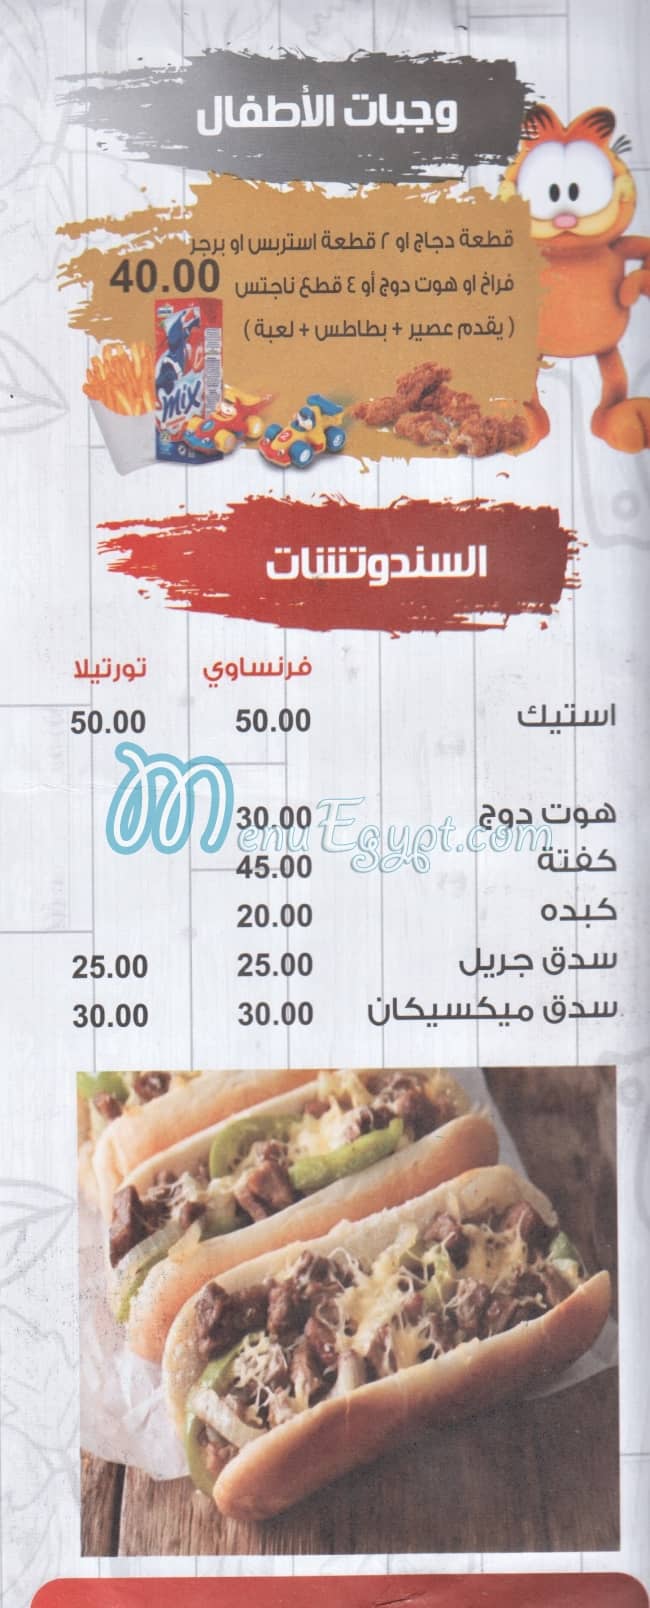 Moaaz menu prices